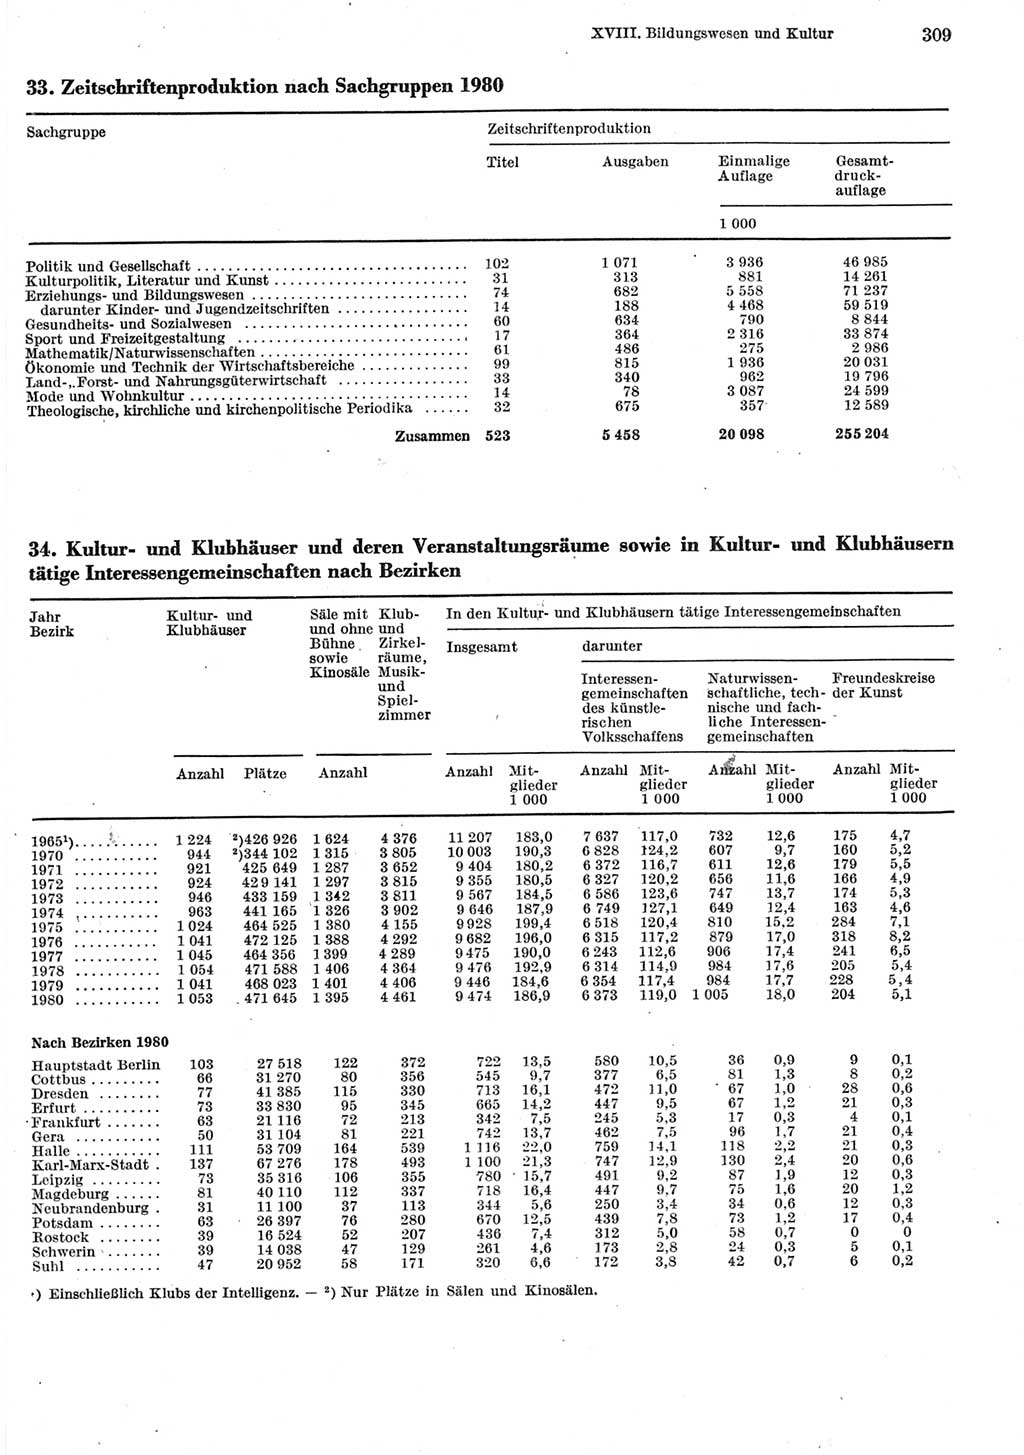 Statistisches Jahrbuch der Deutschen Demokratischen Republik (DDR) 1981, Seite 309 (Stat. Jb. DDR 1981, S. 309)